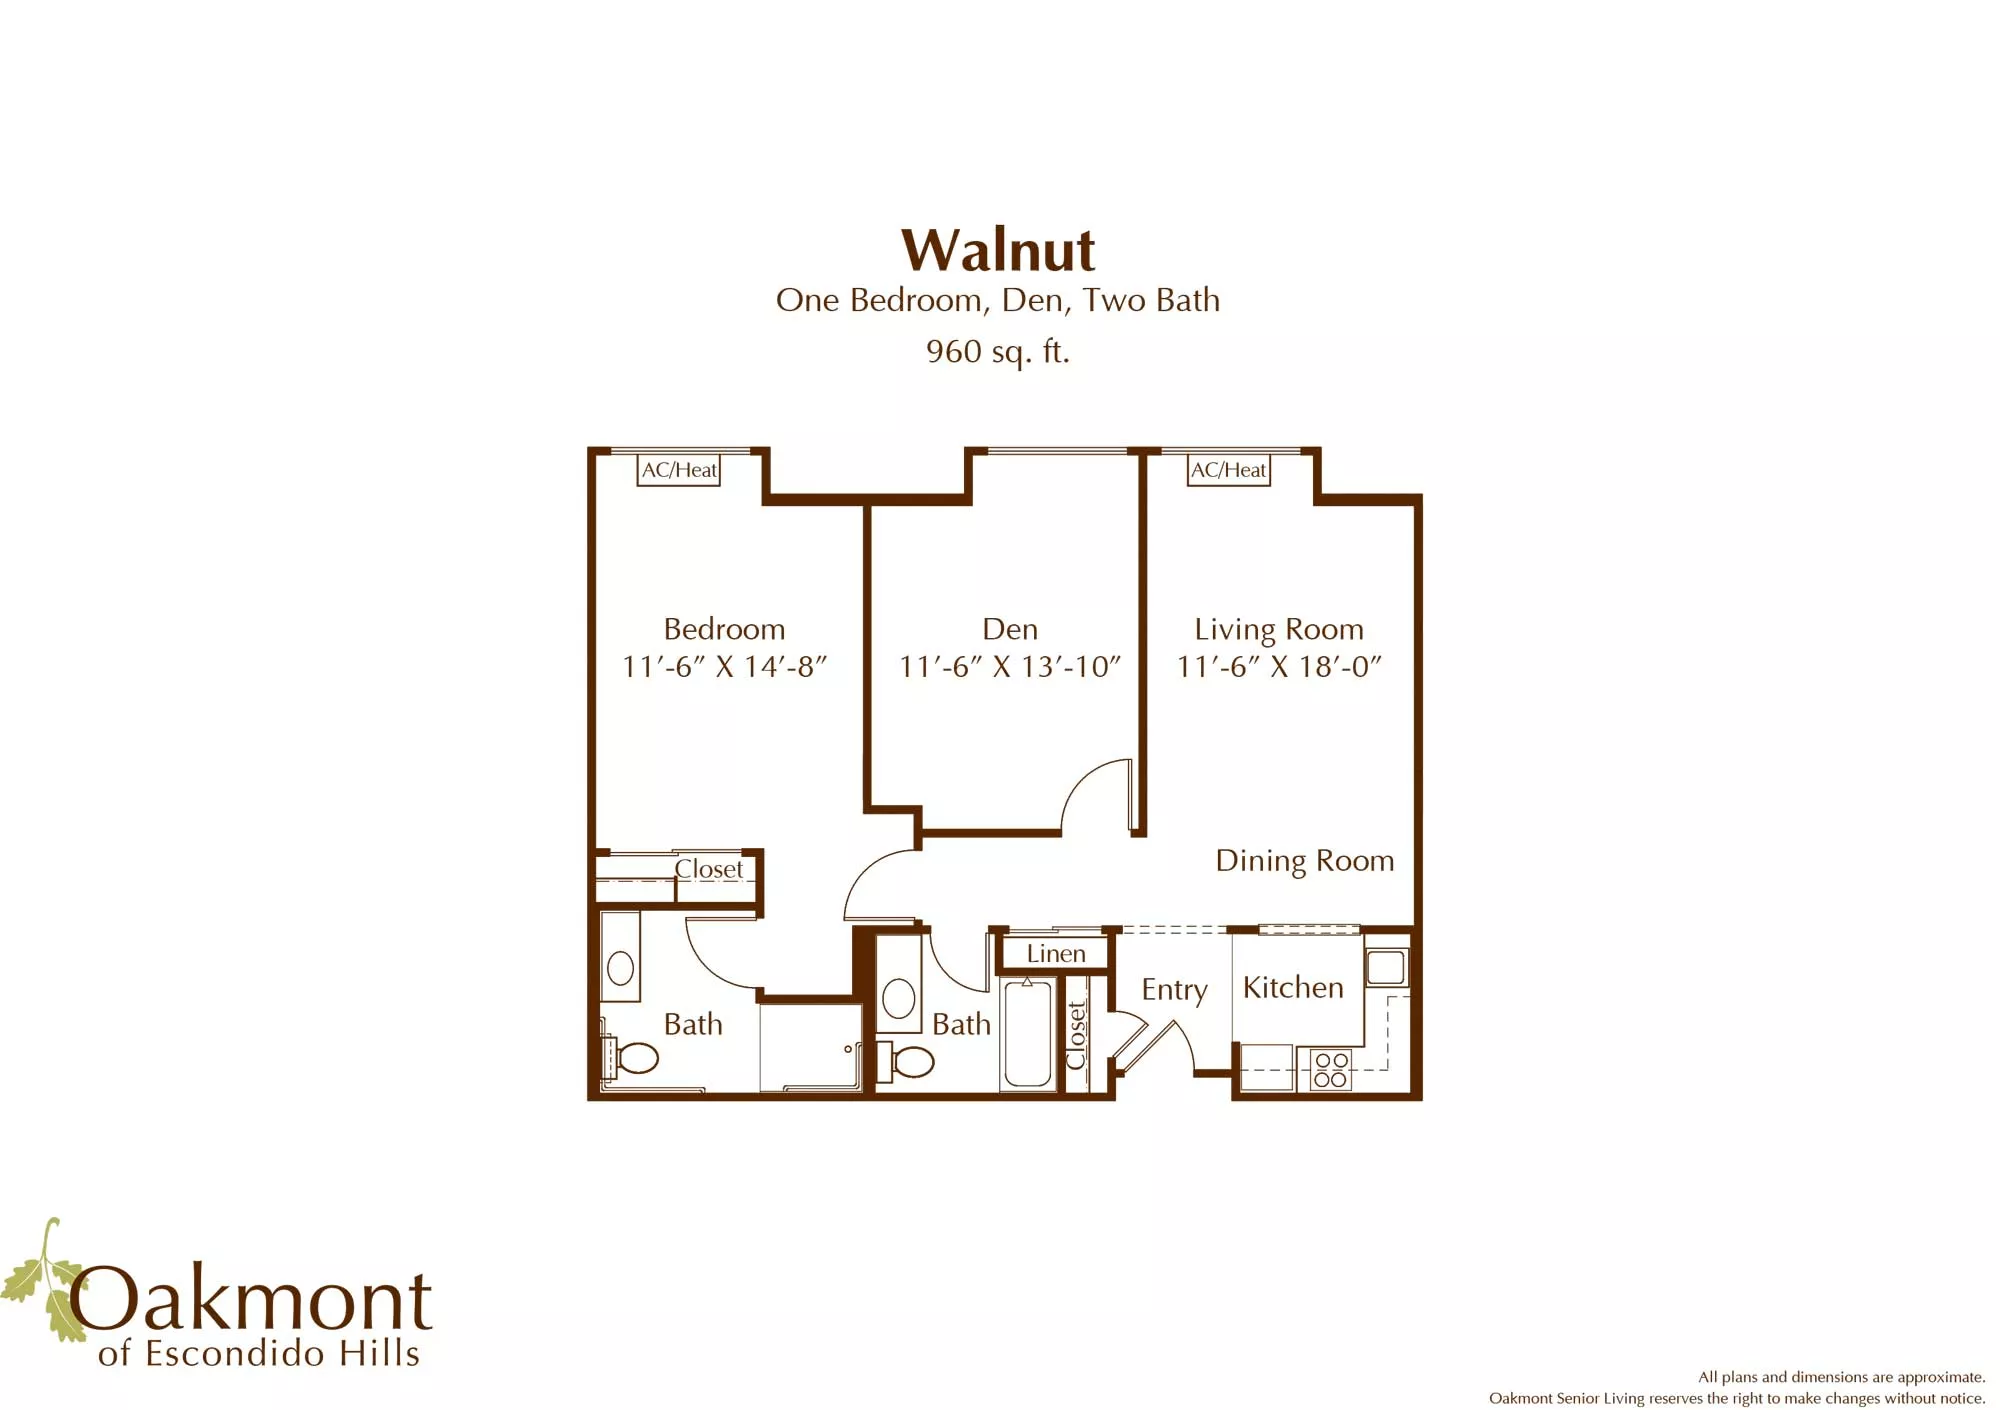 Walnut one bedroom floor plan